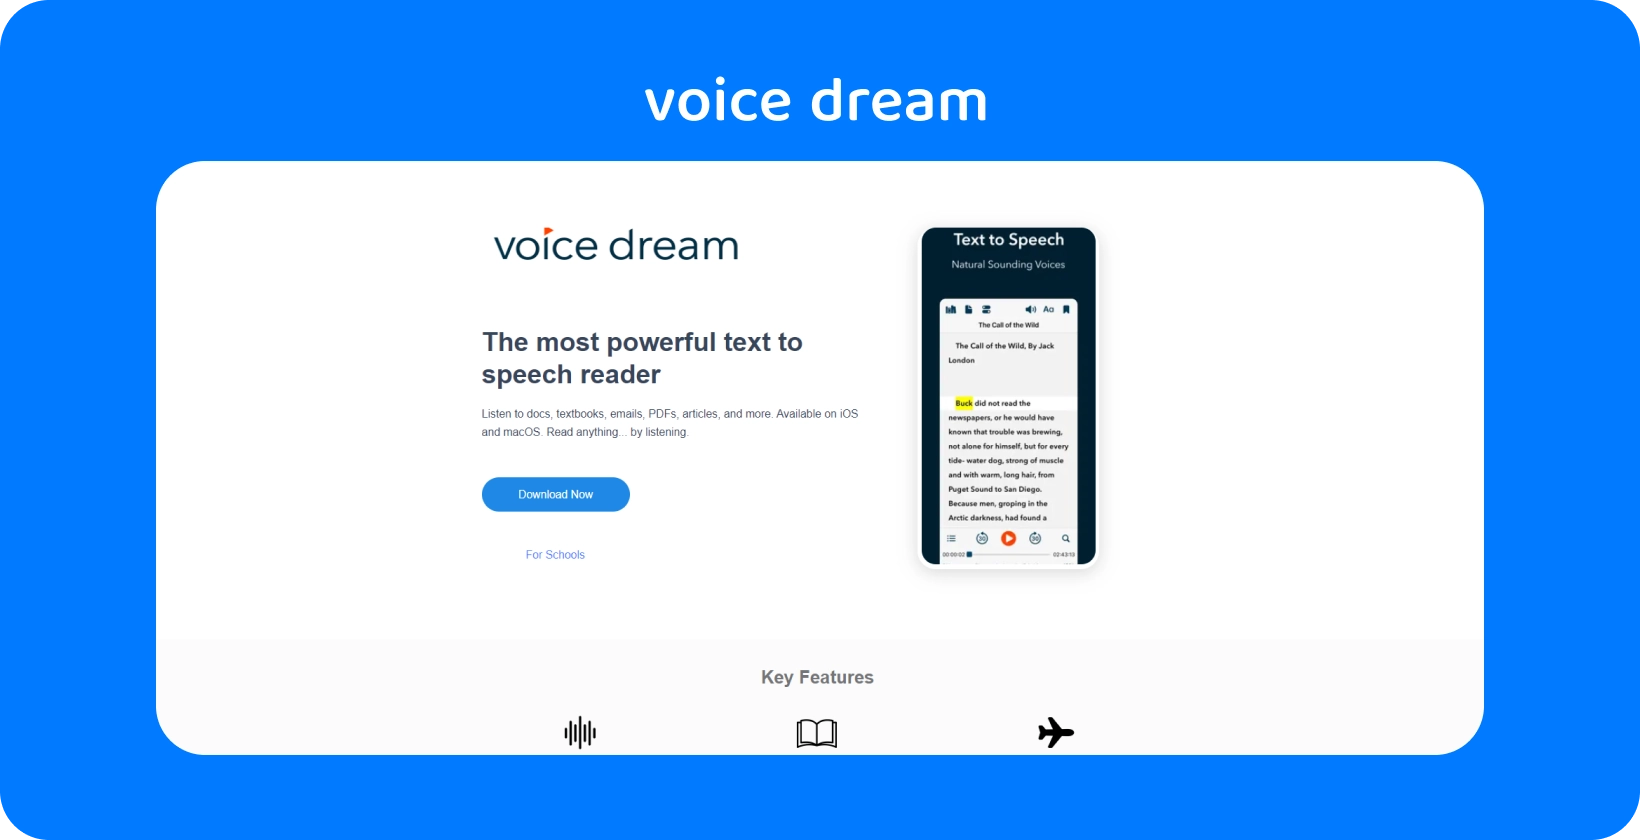 ממשק אפליקציית Voice Dream המציג קורא טקסט לדיבור רב-עוצמה עבור מסמכים שונים במכשירים ניידים.